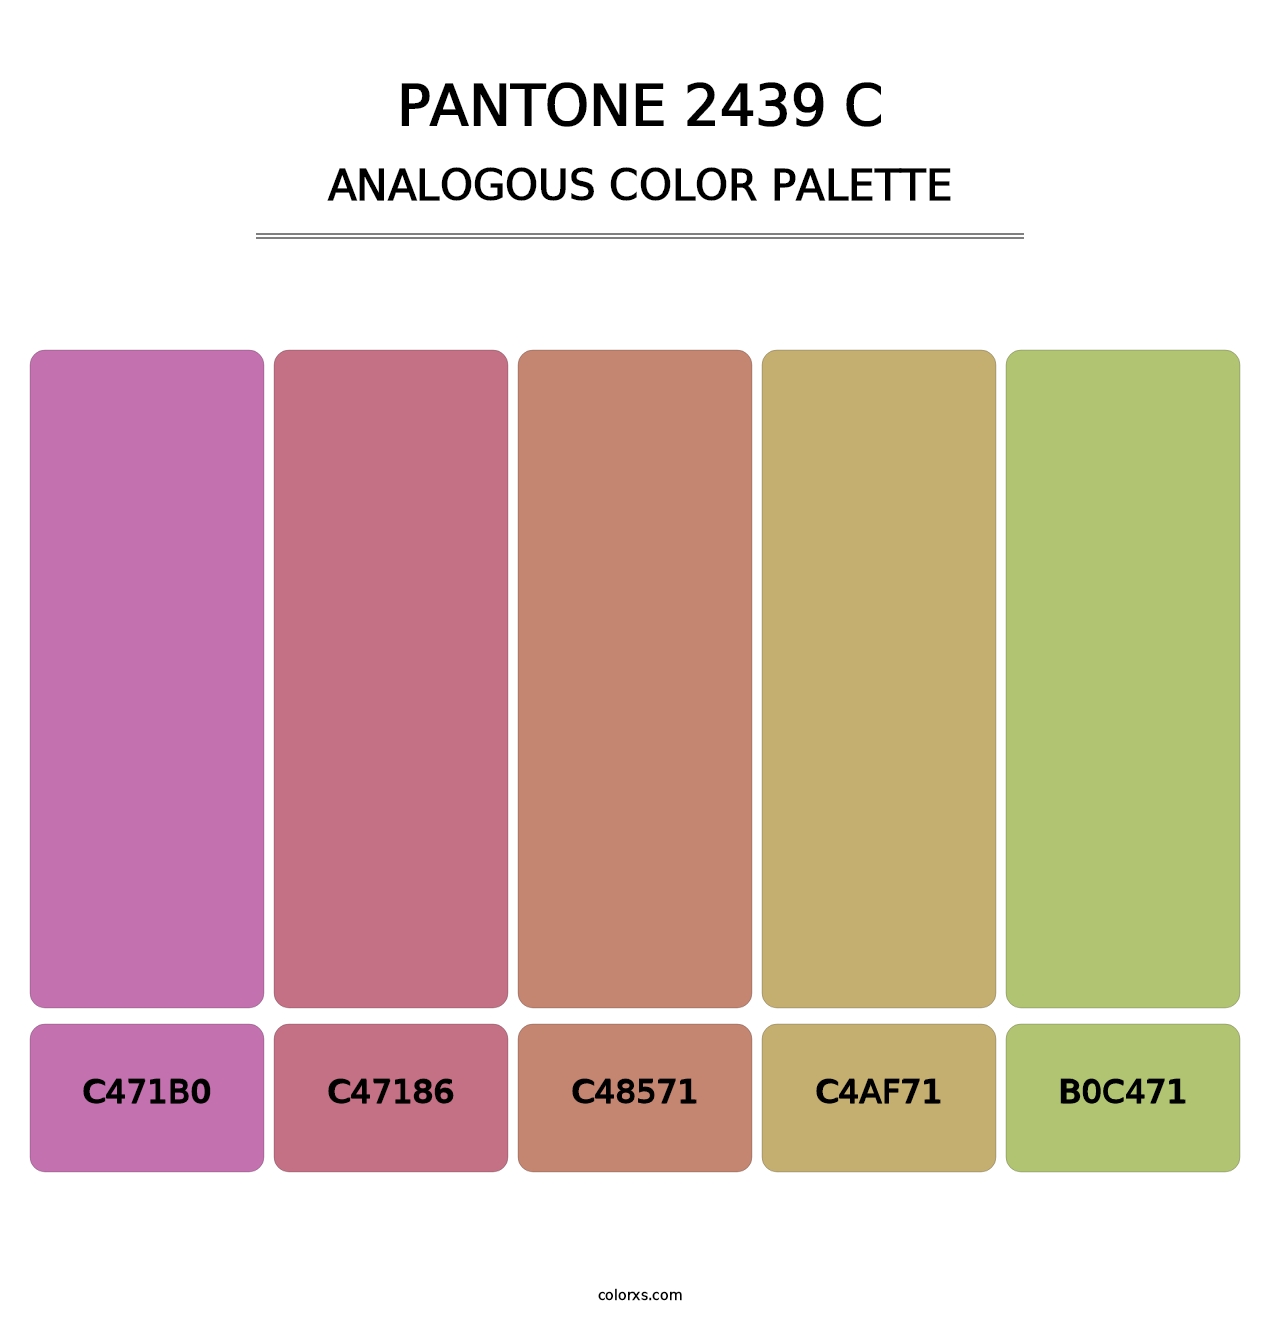 PANTONE 2439 C - Analogous Color Palette